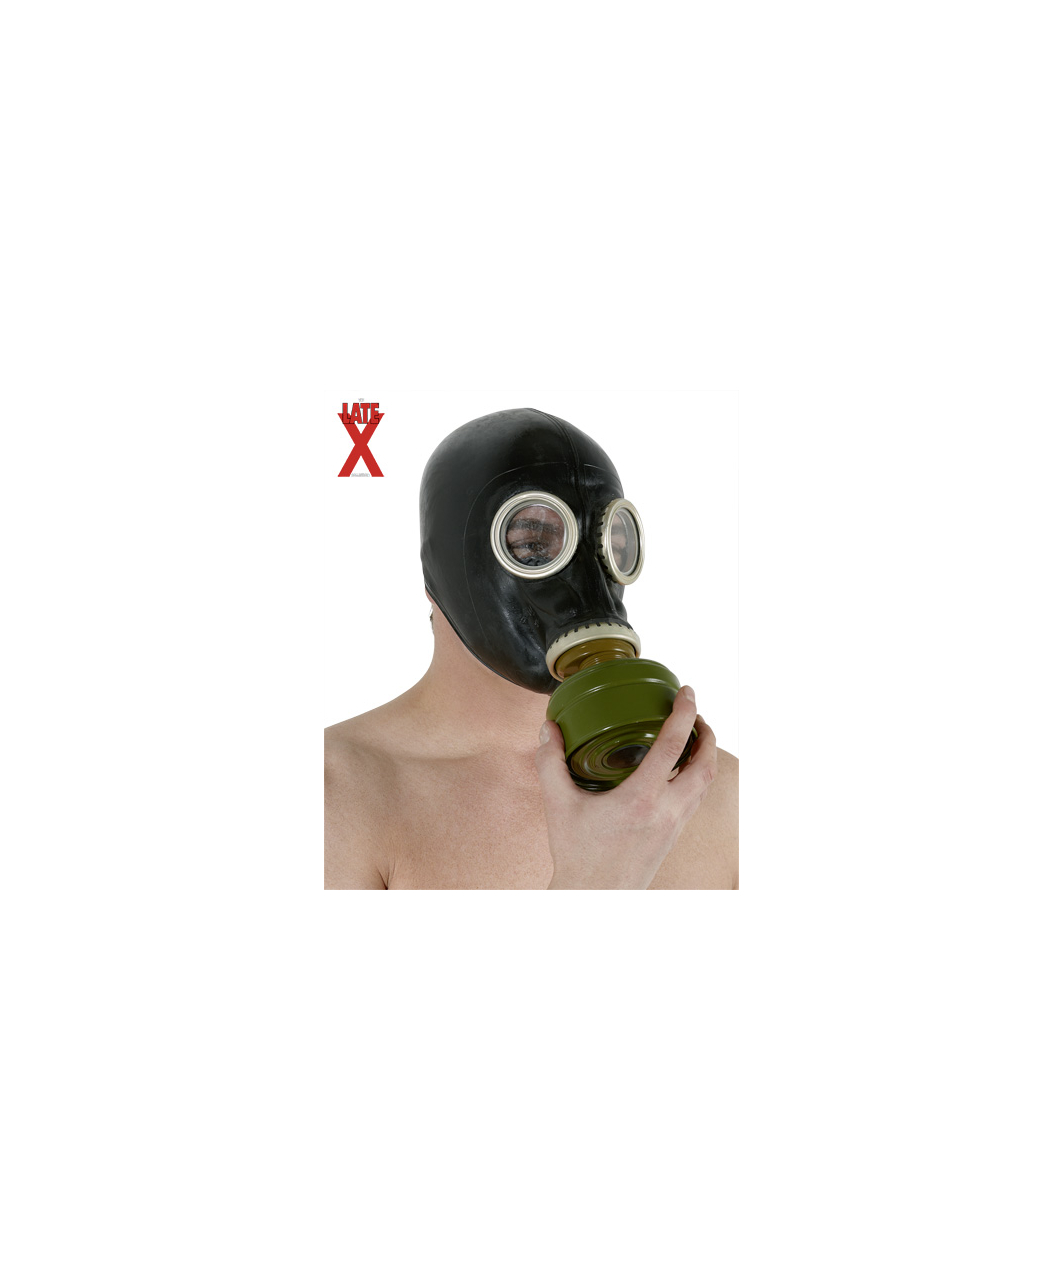 Late X латексная газовая маска русского типа, с фильтром воздуха